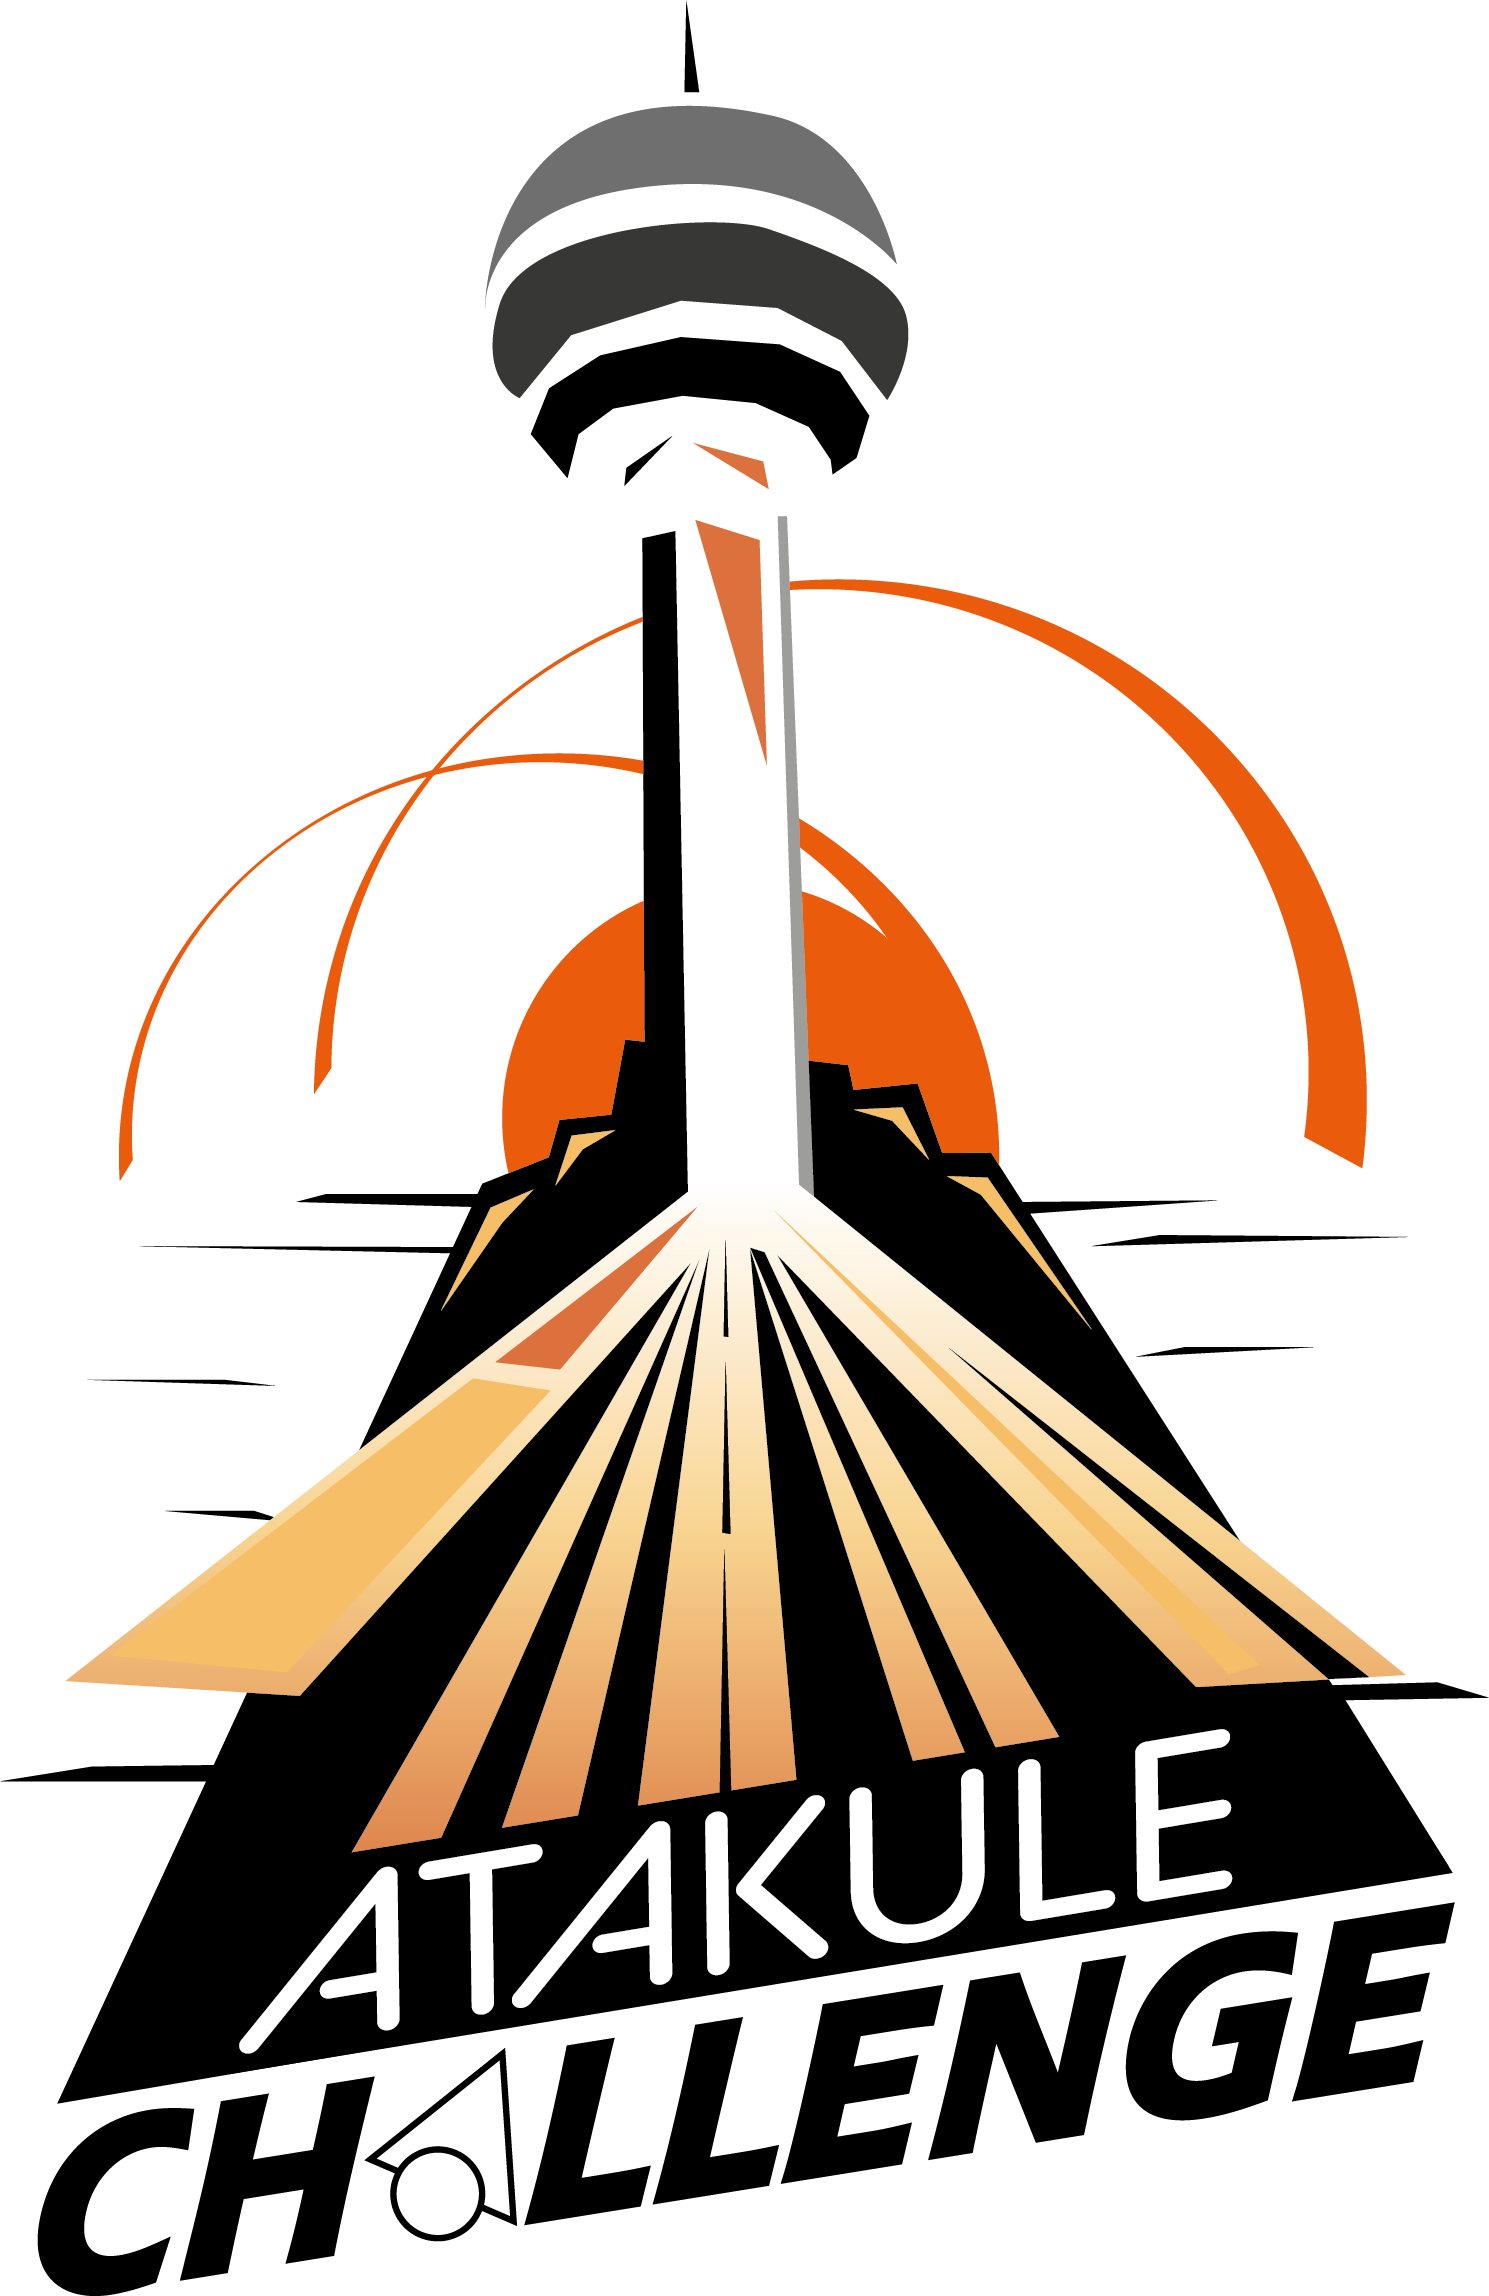 Atakule Challenge Logo